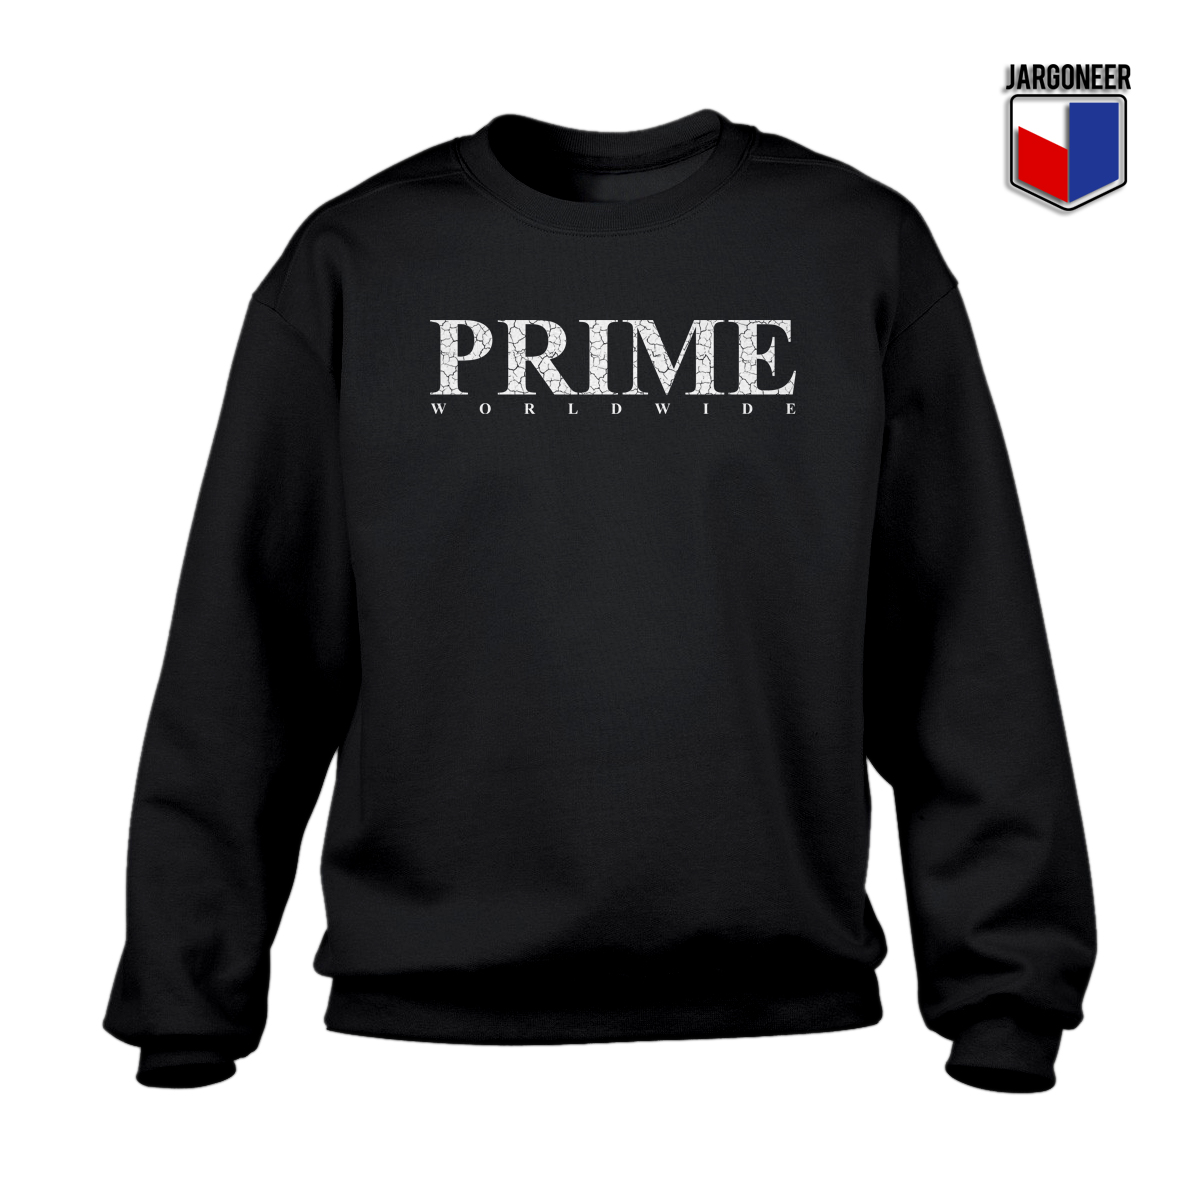 Prime Worldwide 2 - Shop Unique Graphic Cool Shirt Designs